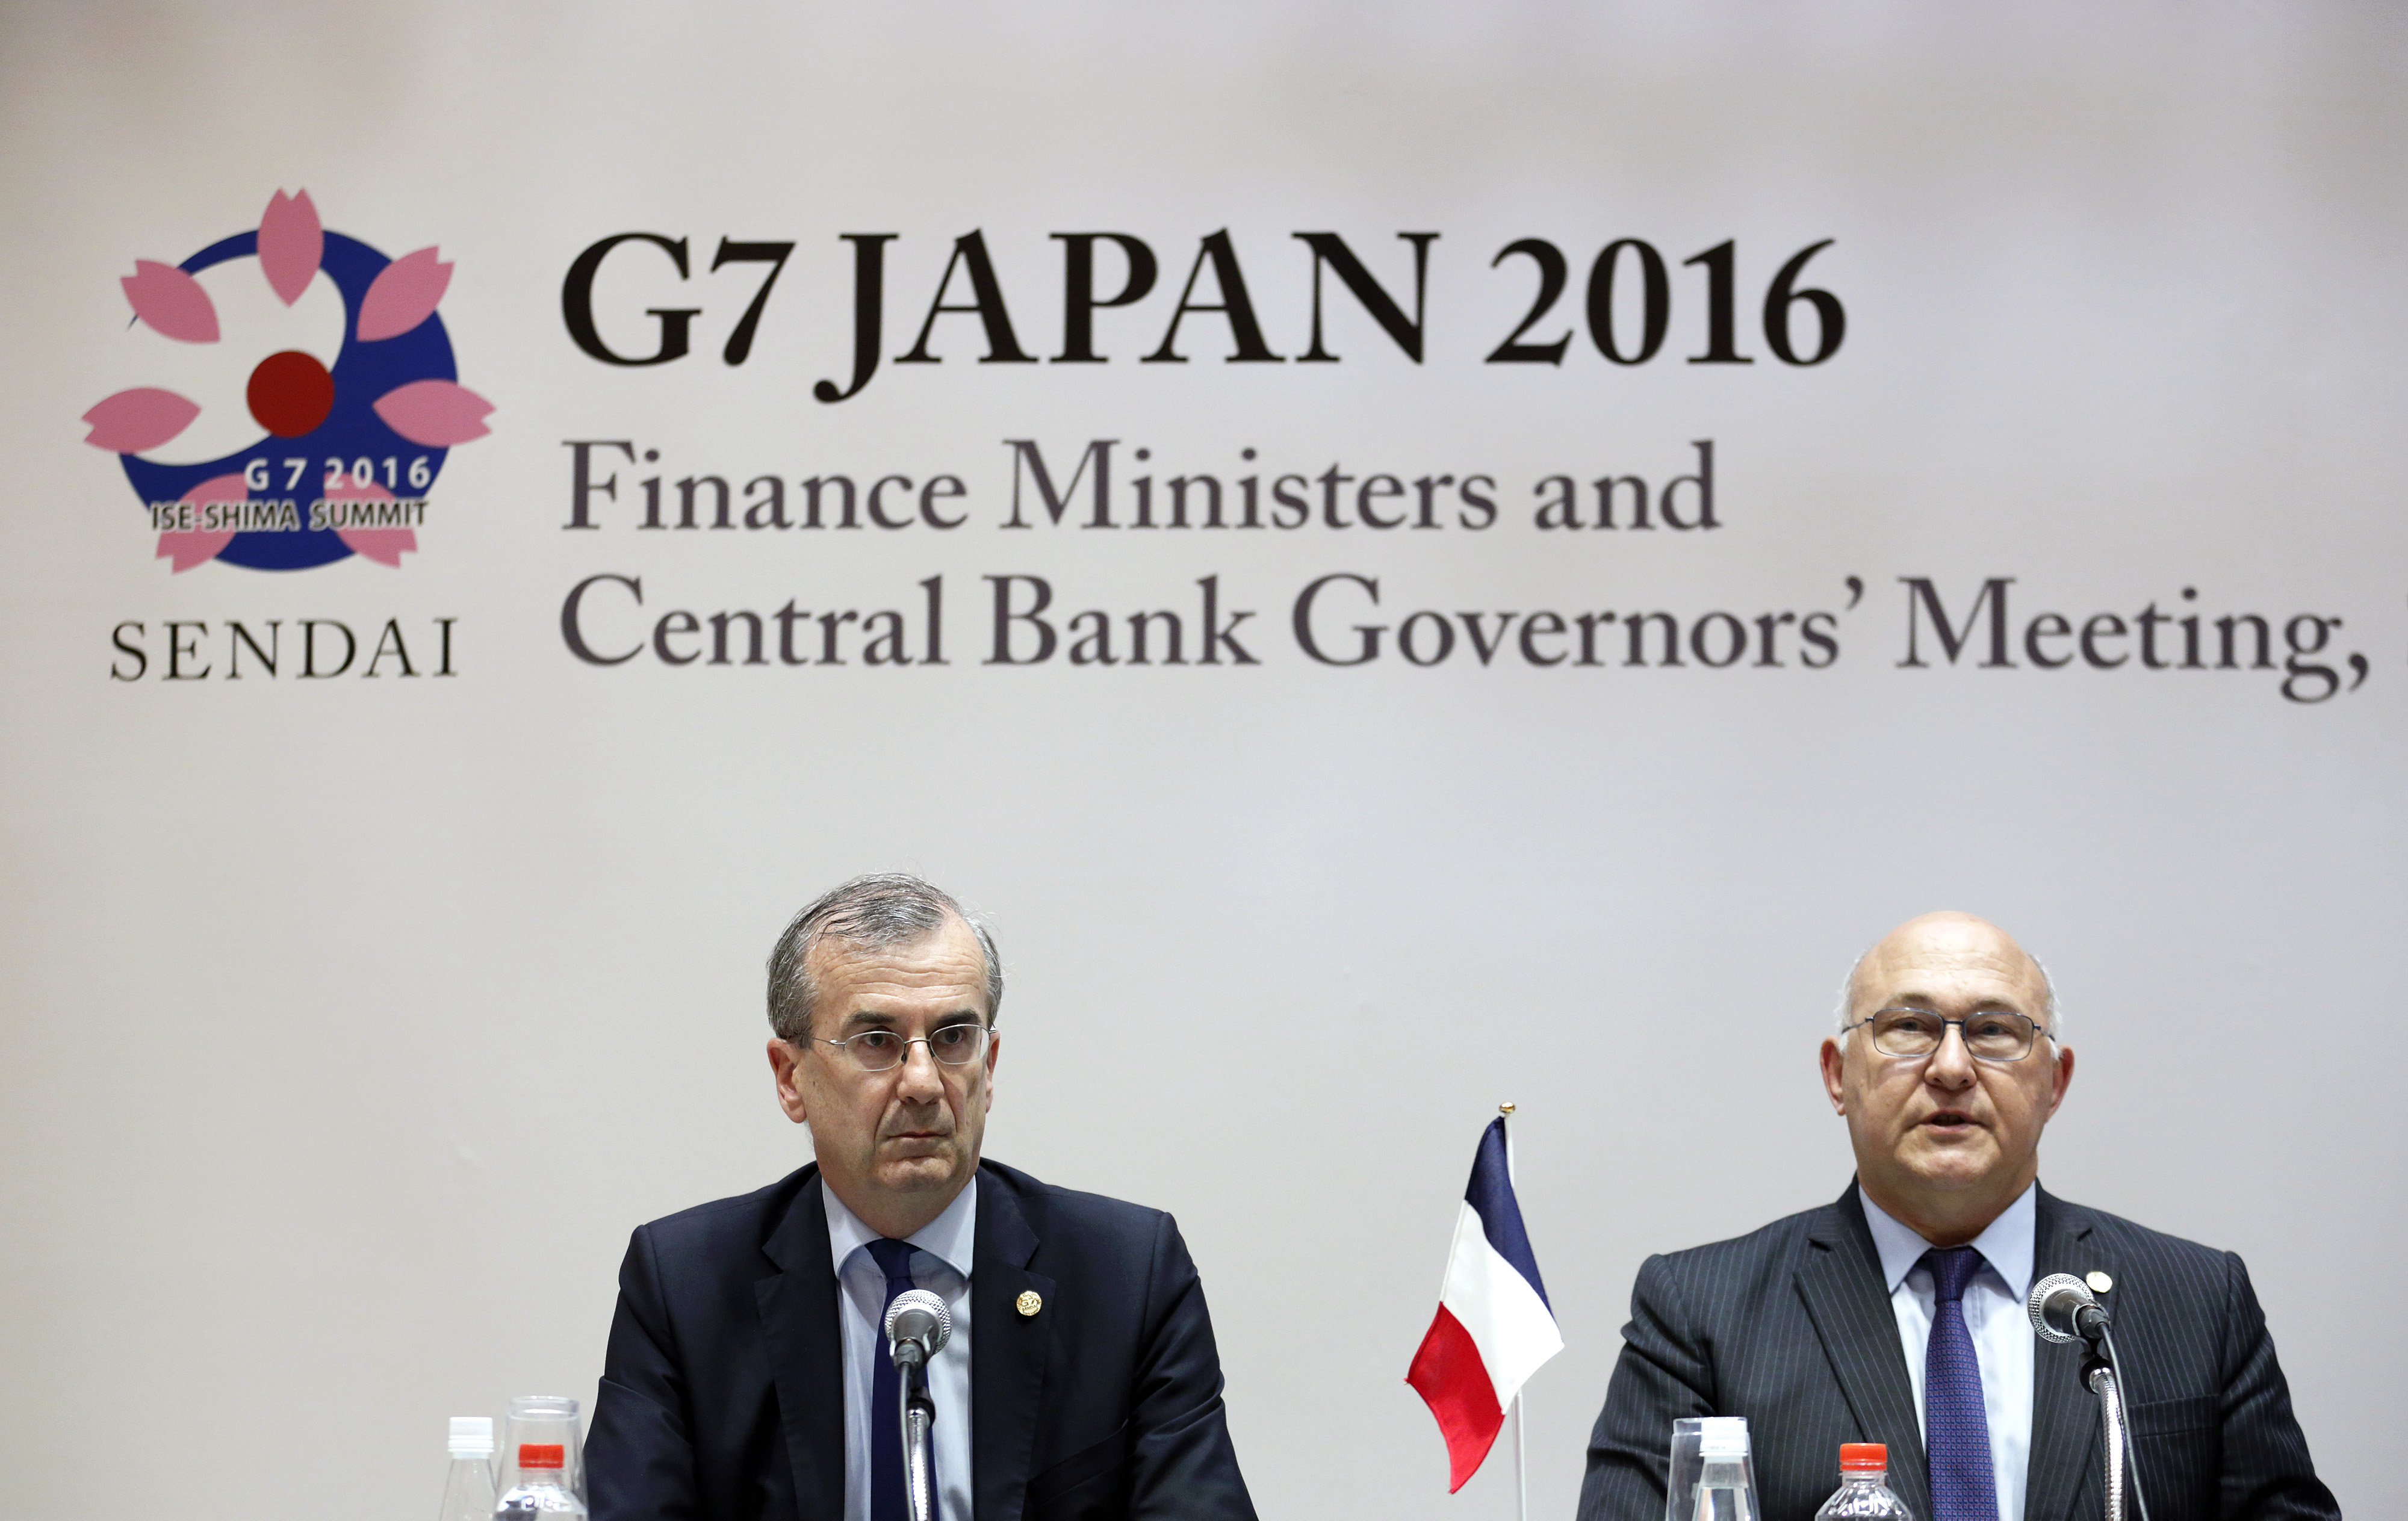 A debt agenda for the G7